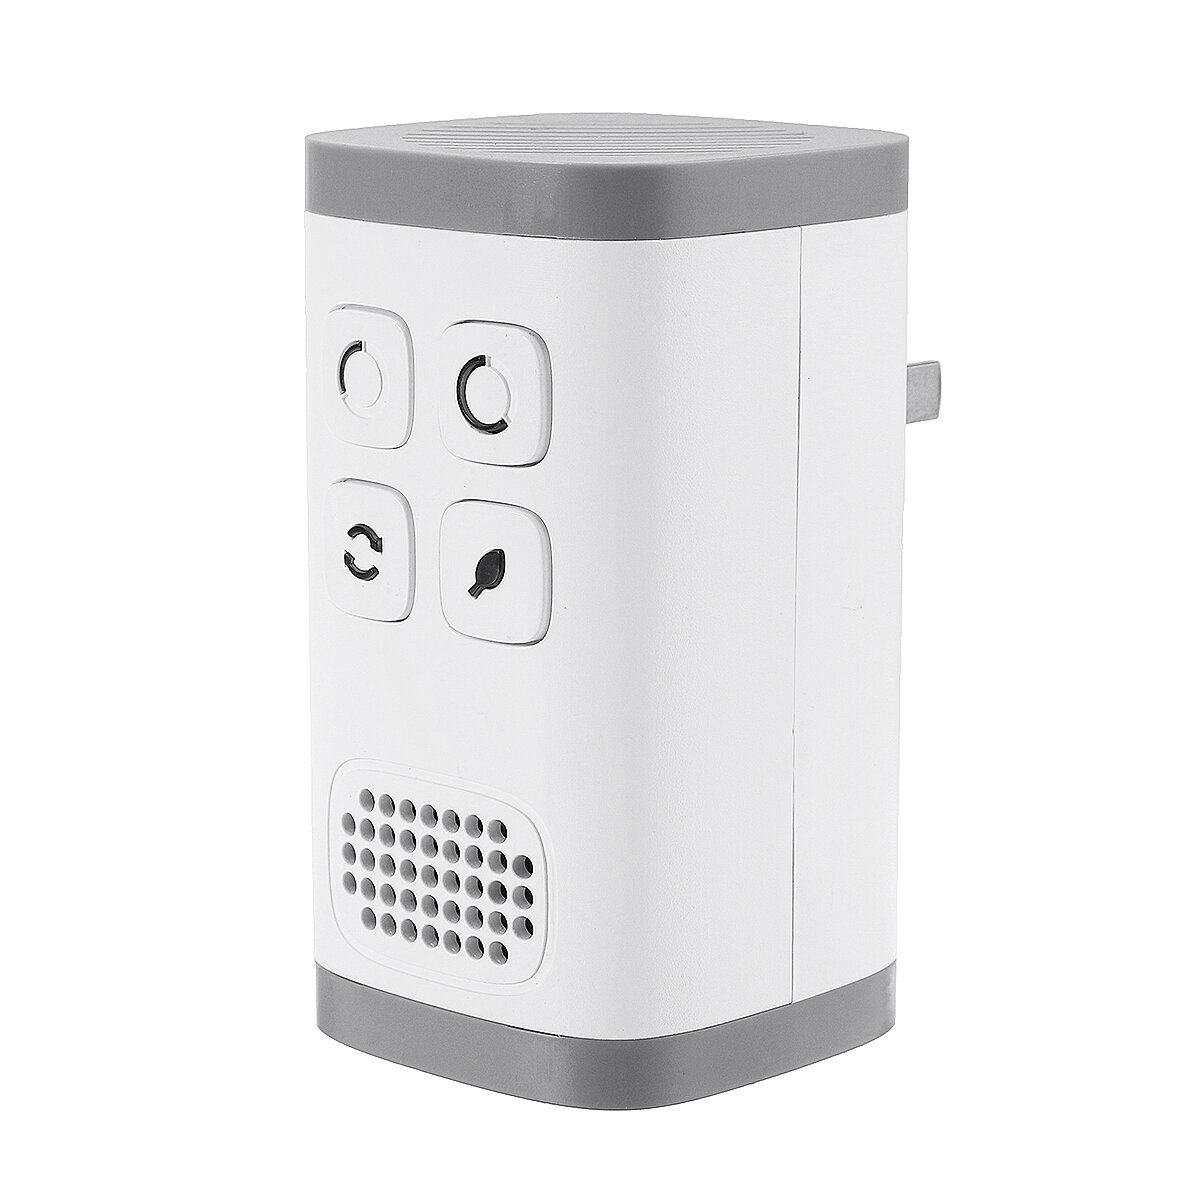 AC110-240V Plug-in Purificador de aire Generador de ozono Ionizador Limpiador de olores de grado industrial limpio Purif